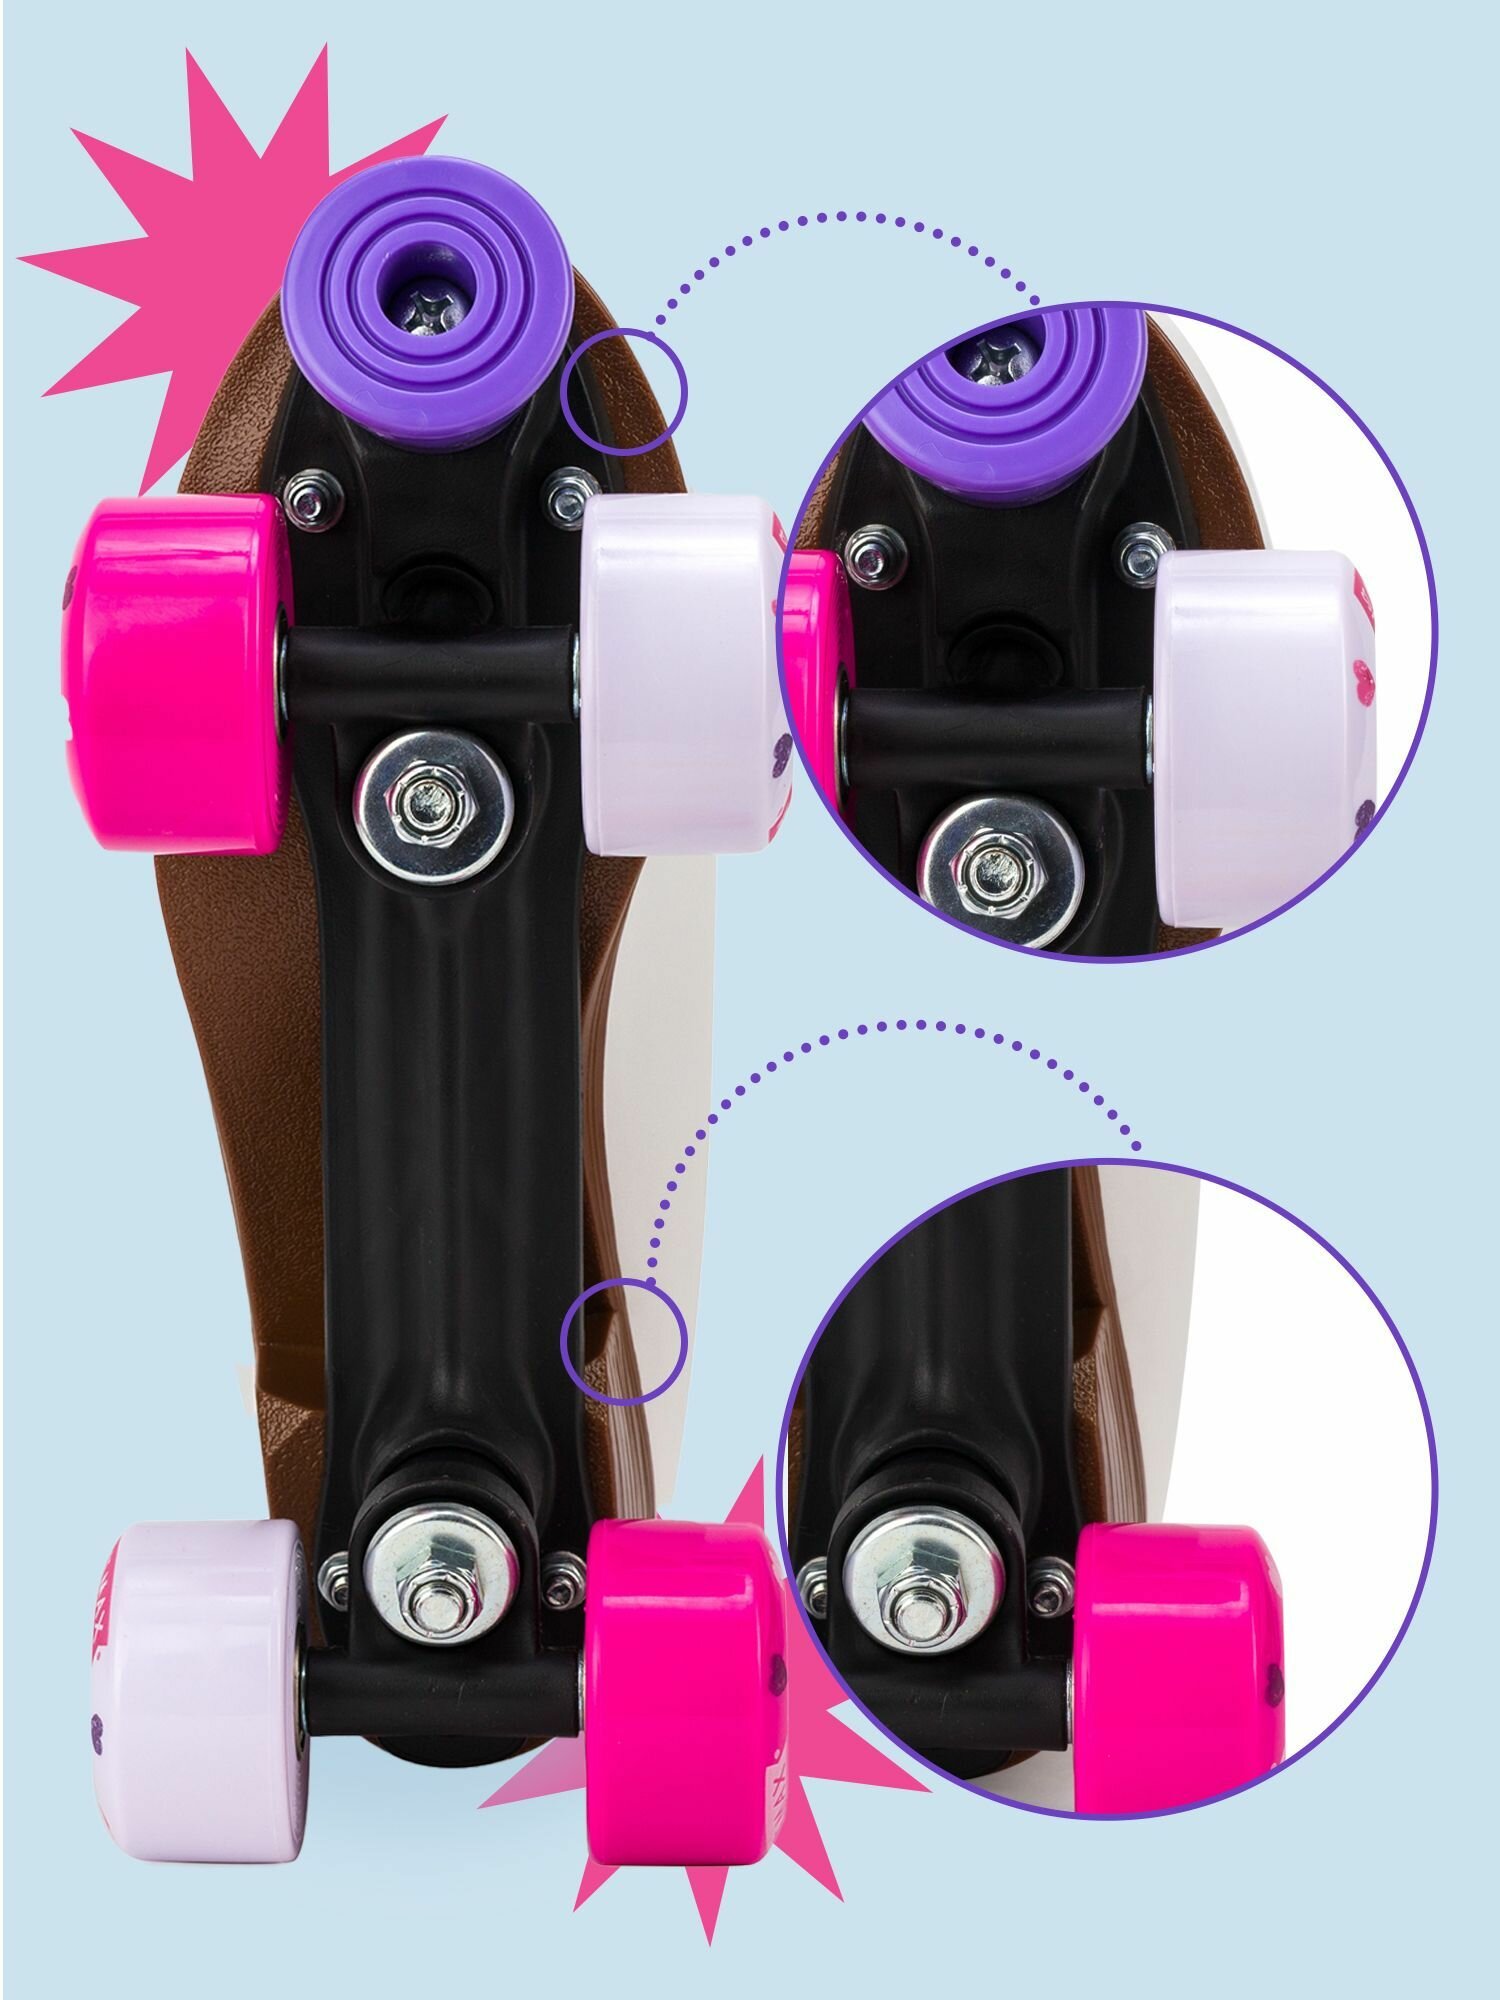 Роликовые коньки RADOST Roller skate YXSKT04PNHR38 цвет белые с розовыми сердечками, размер 38